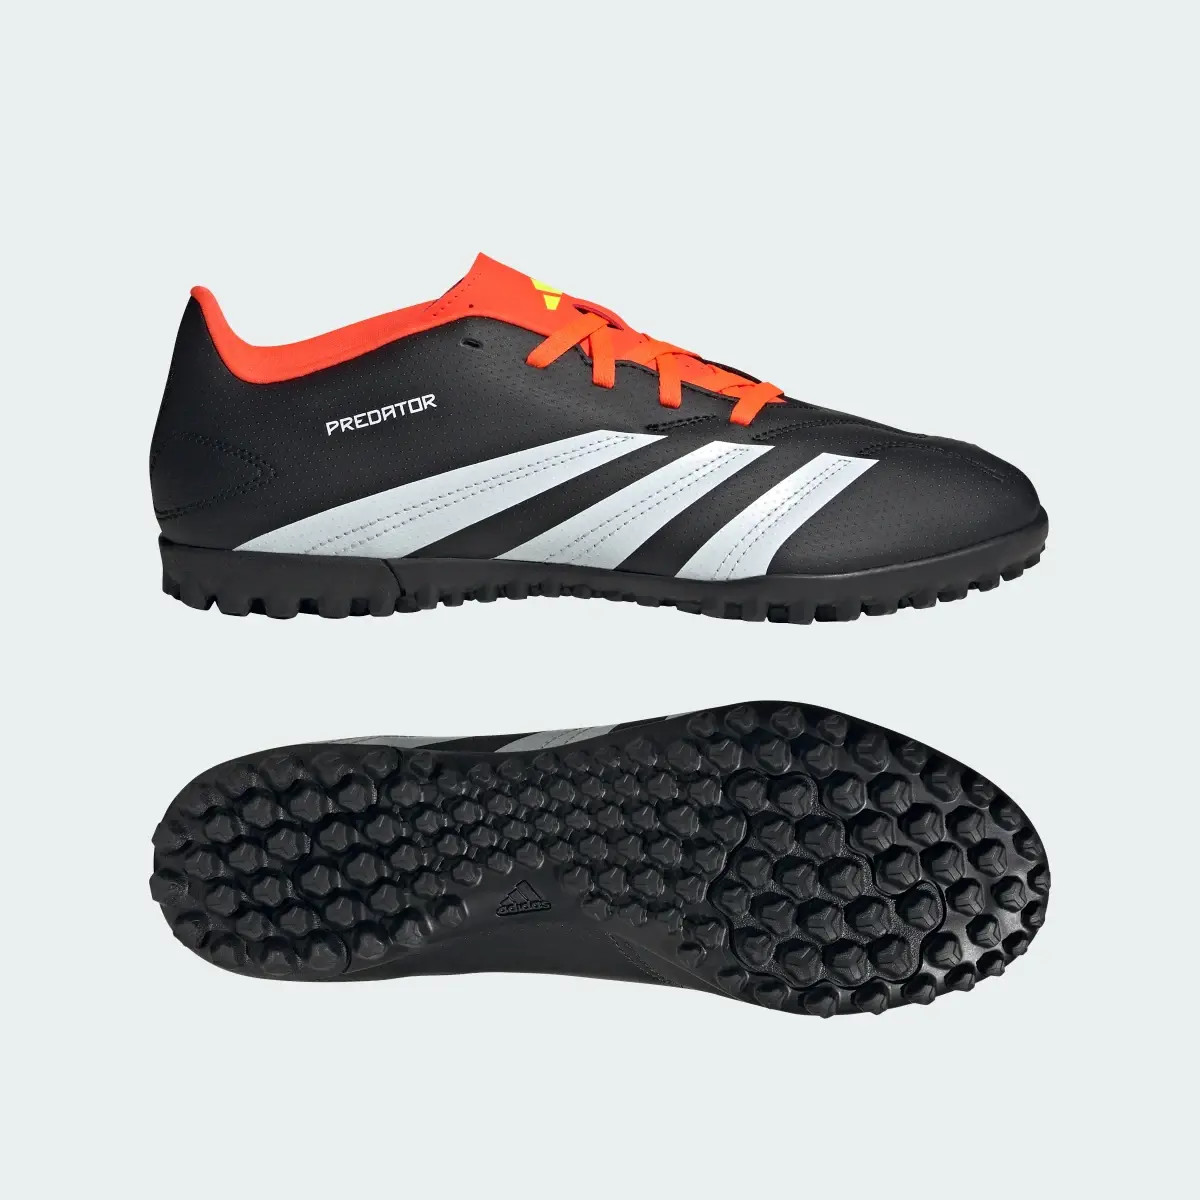 Adidas Predator Club Turf Football Boots. 1